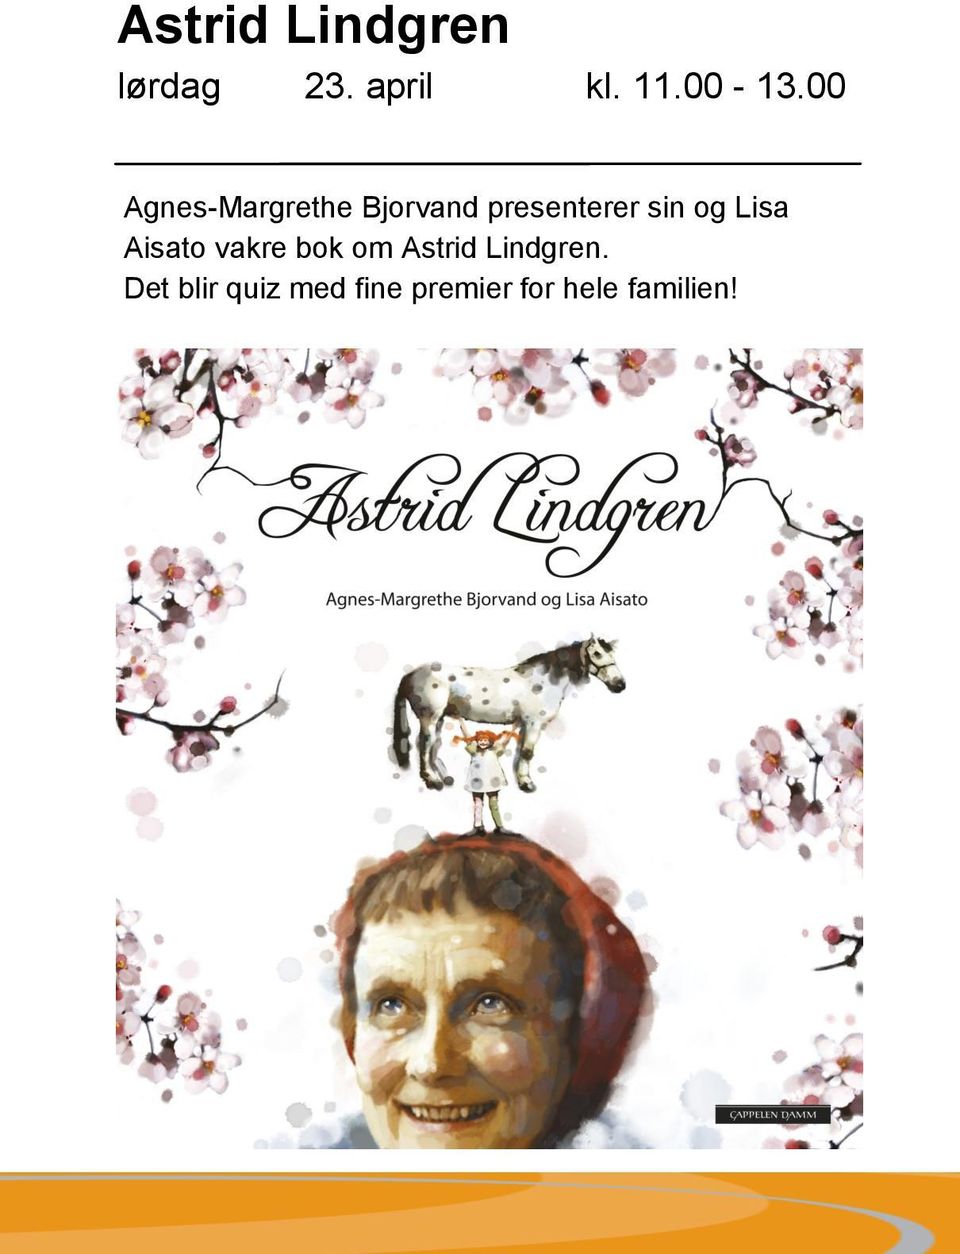 og Lisa Aisato vakre bok om Astrid Lindgren.